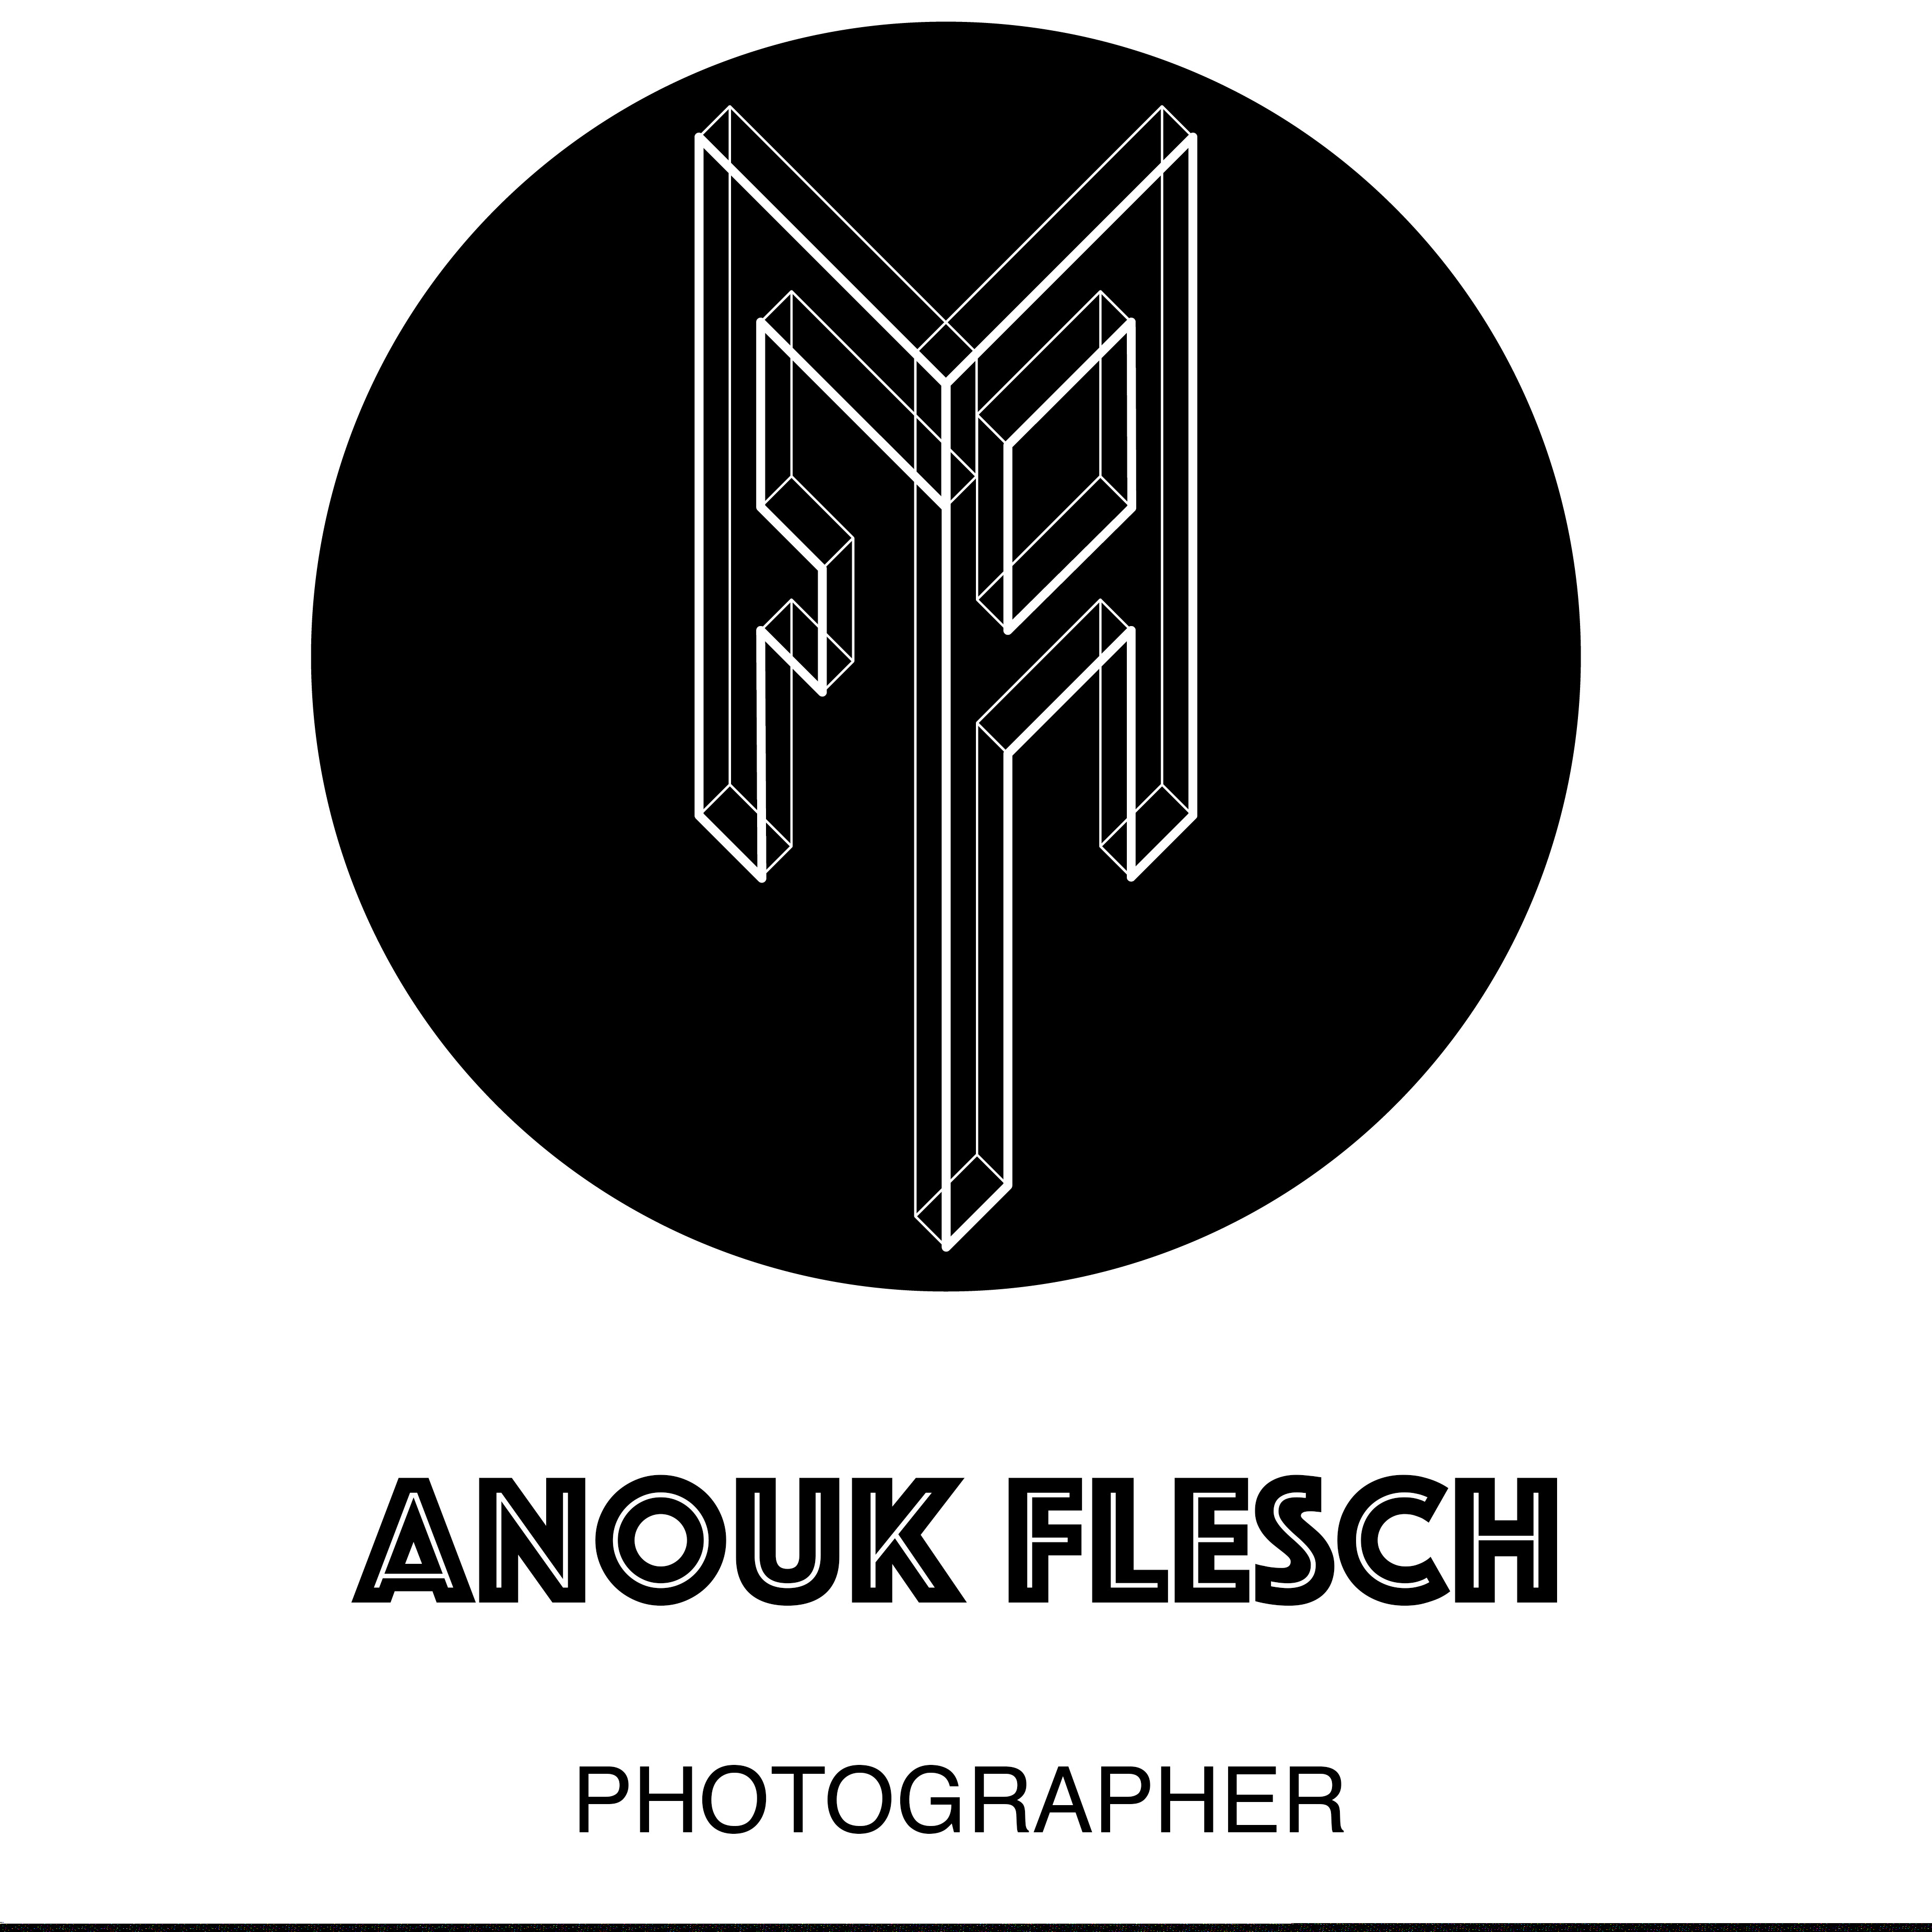 ANOUK FLESCH